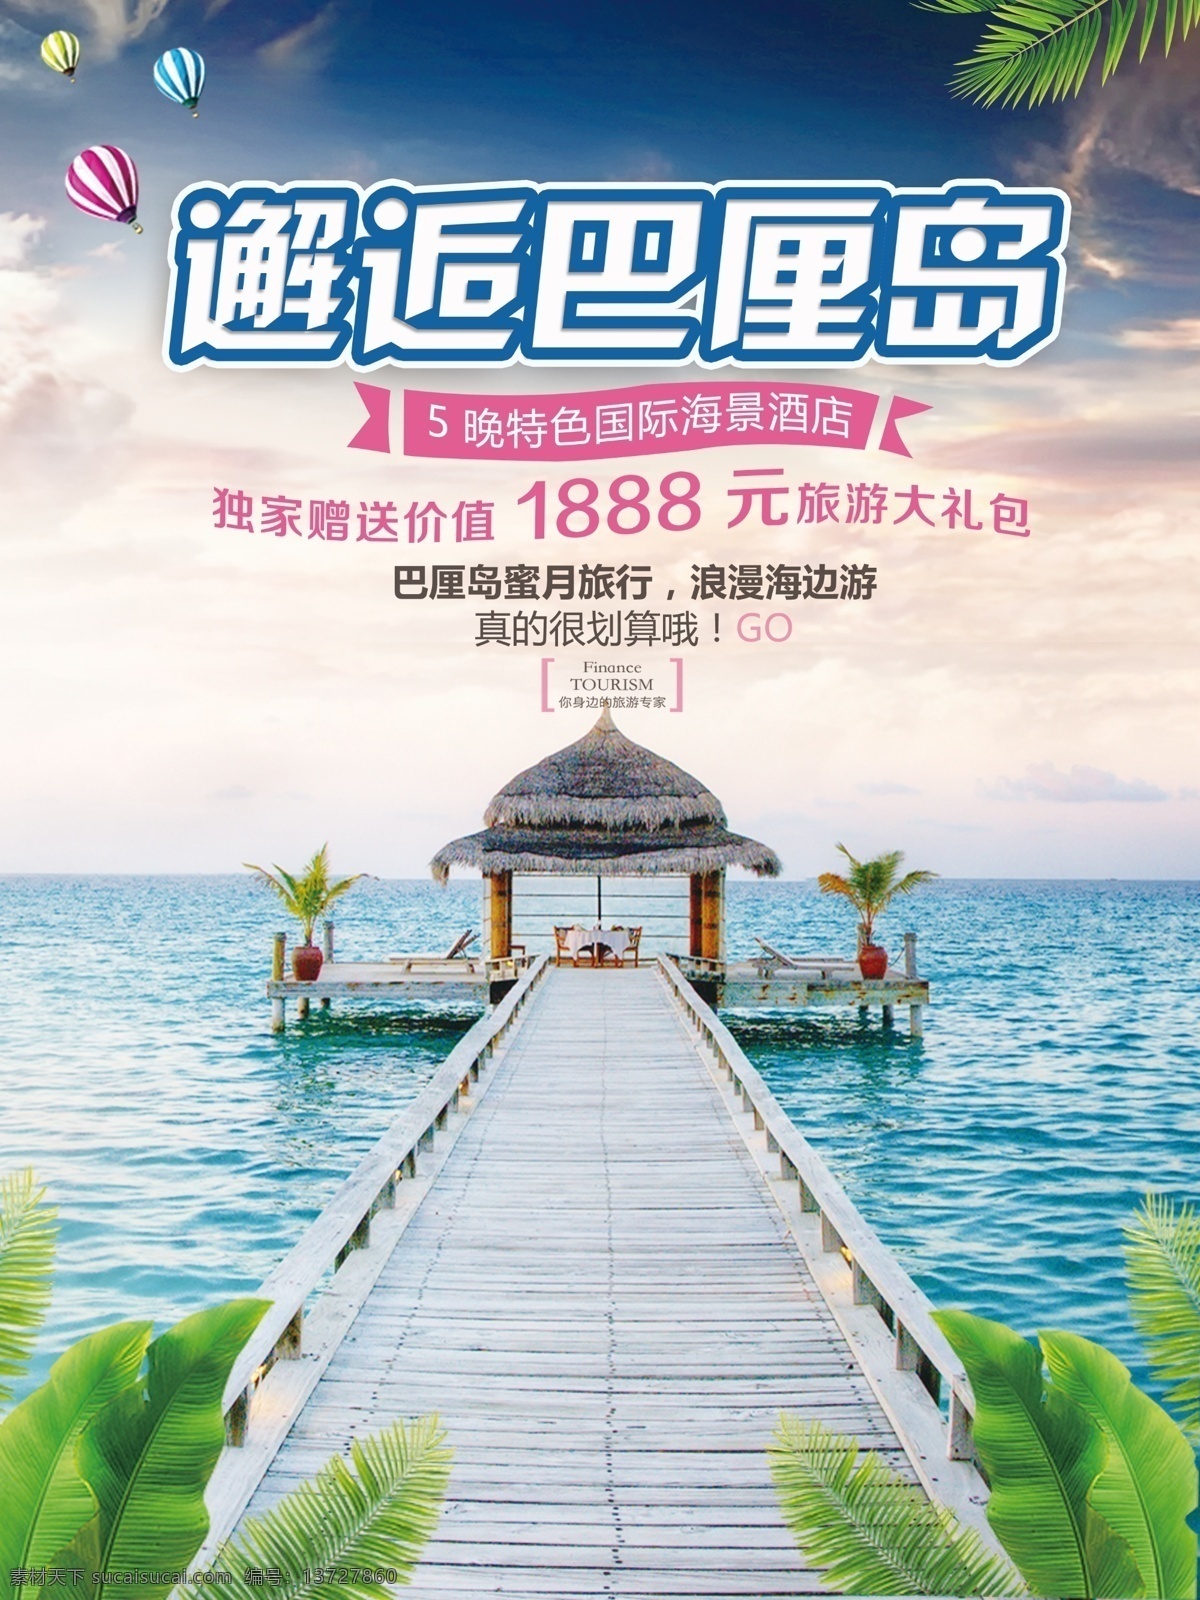 蓝色 大气 梦幻 巴厘岛 旅游 促销 海报 芭蕉叶 热气球 海洋 蓝天